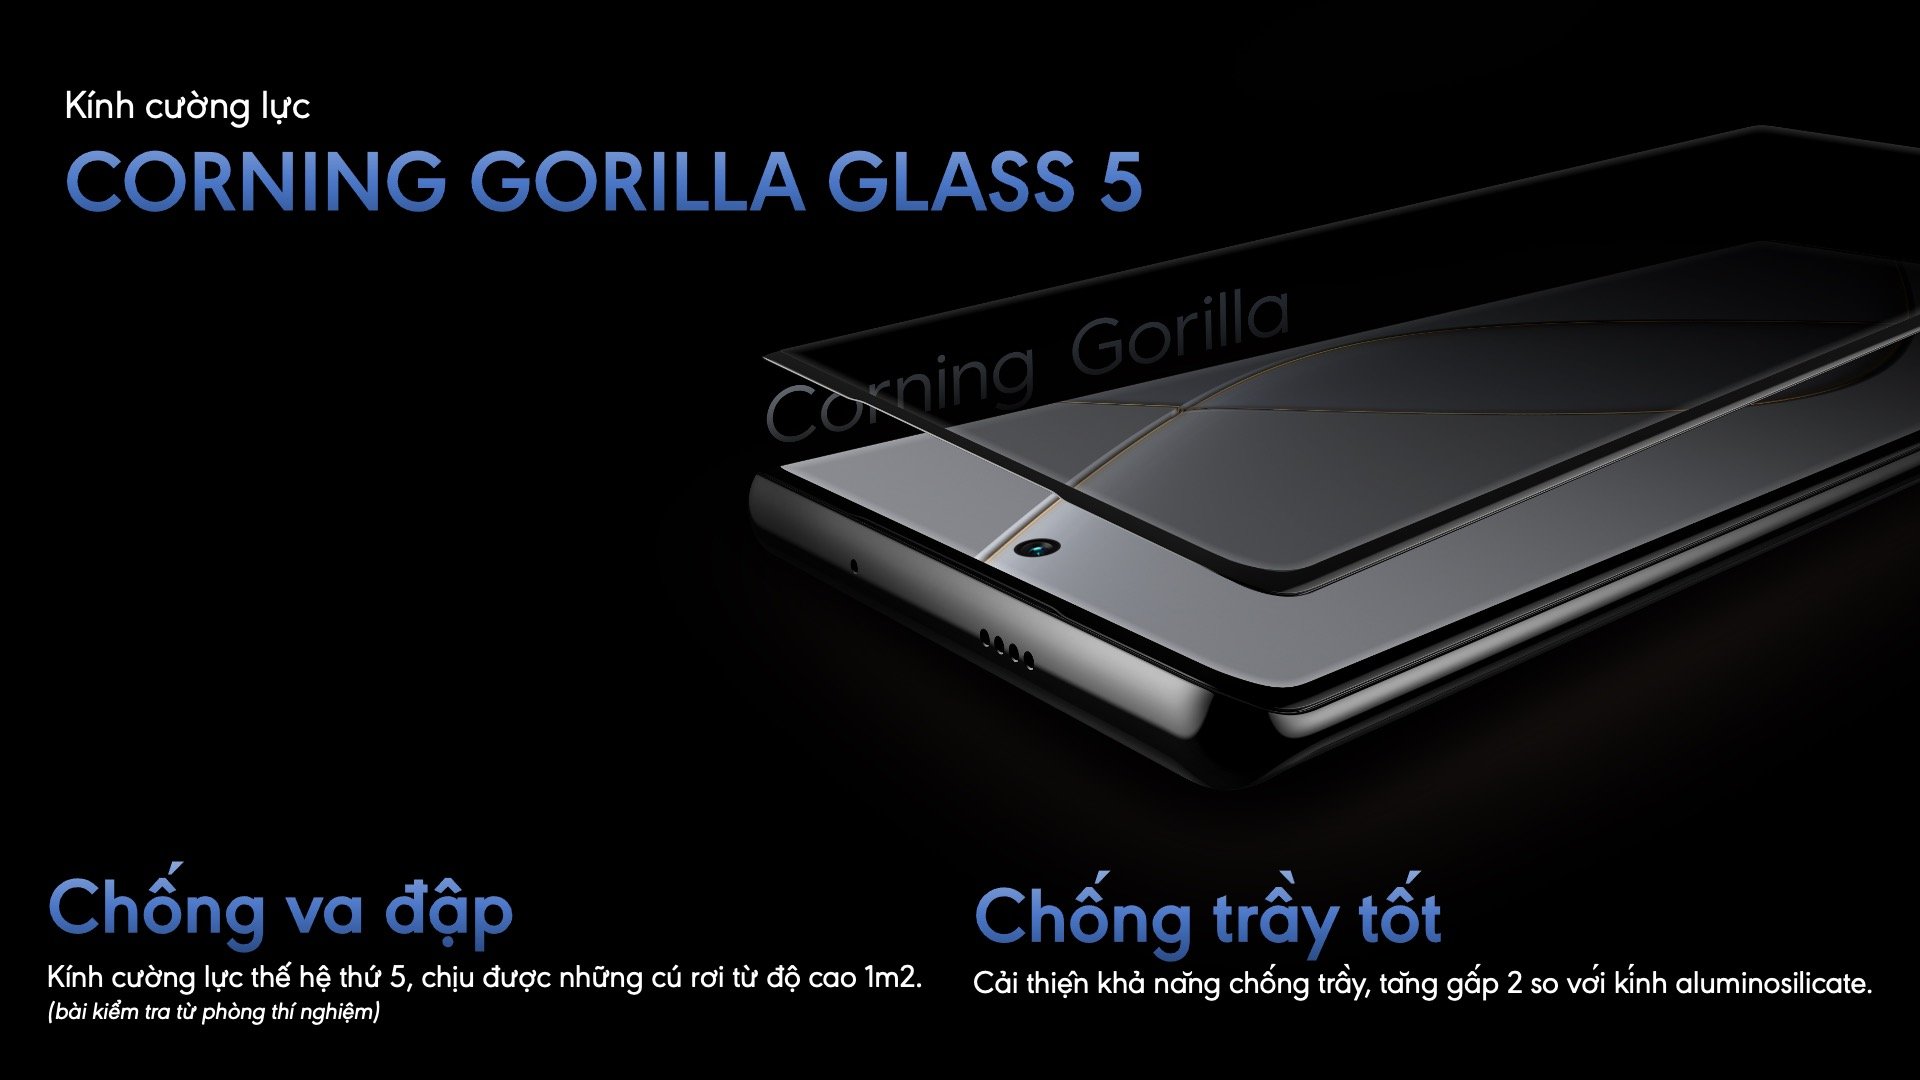 Trang bị kính Corning Gorilla Glass 5 với khả năng chống va đập và chống trầy tốt